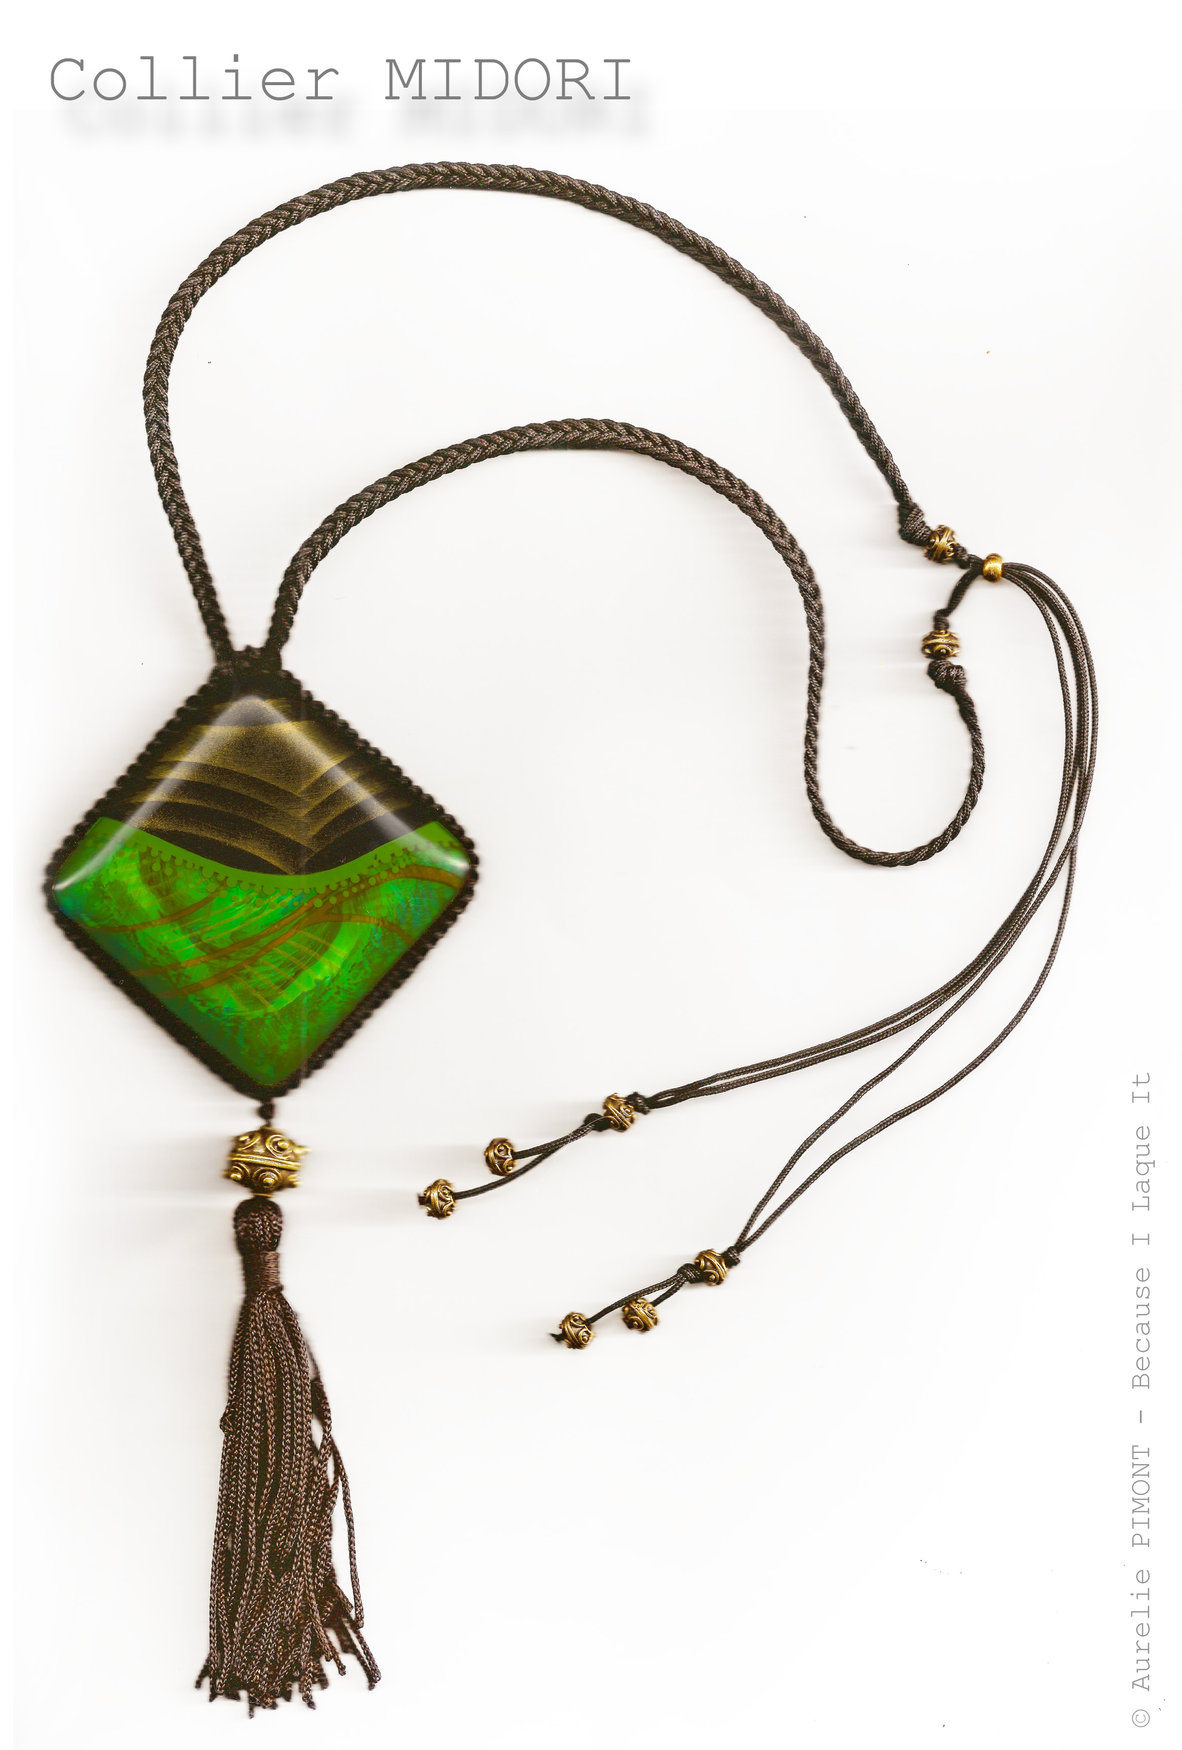 Collier MIDORI<br/><span>Dimensions du carré : 5X5
Longueur du collier réglable : collier classique ou sautoir
Perles en métal bronze</span>